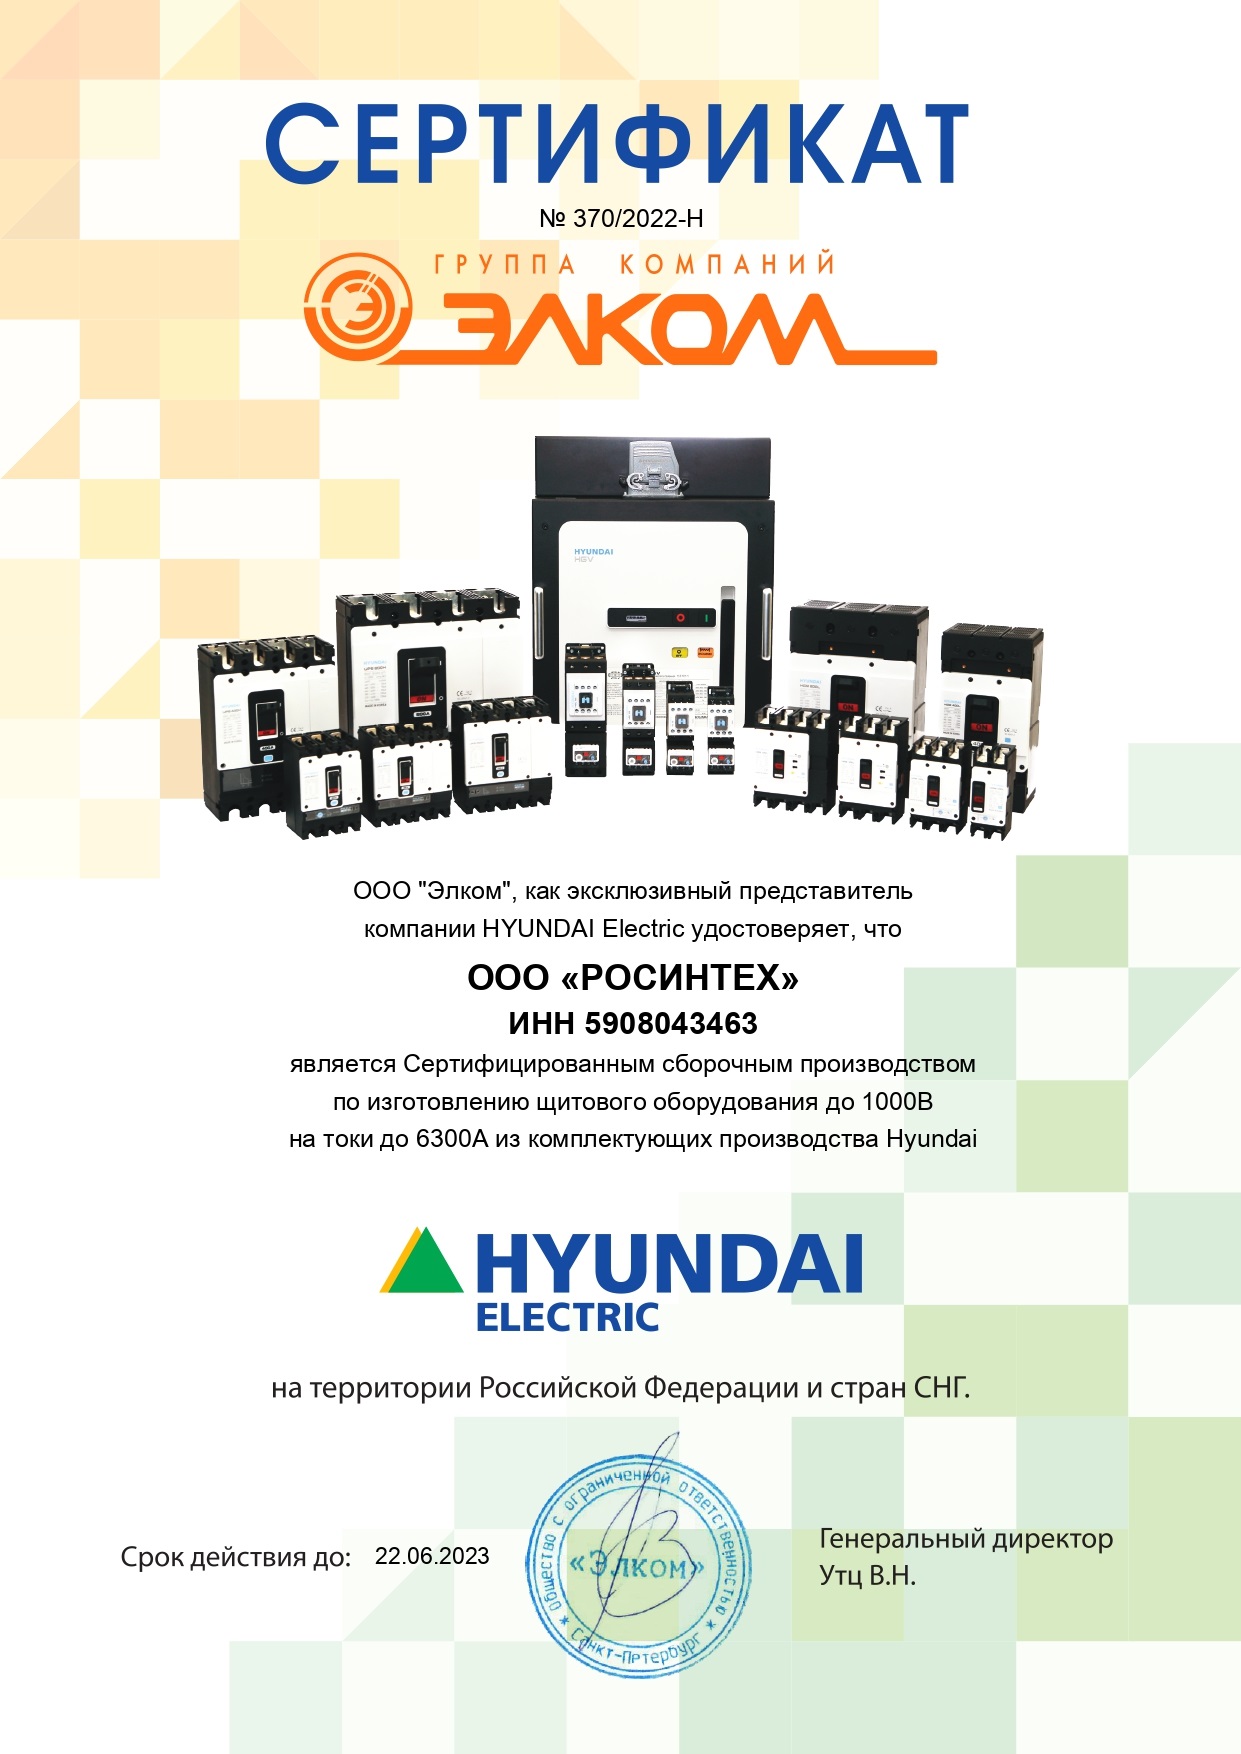 Сертификат производителя из комплектующих HYUNDAI